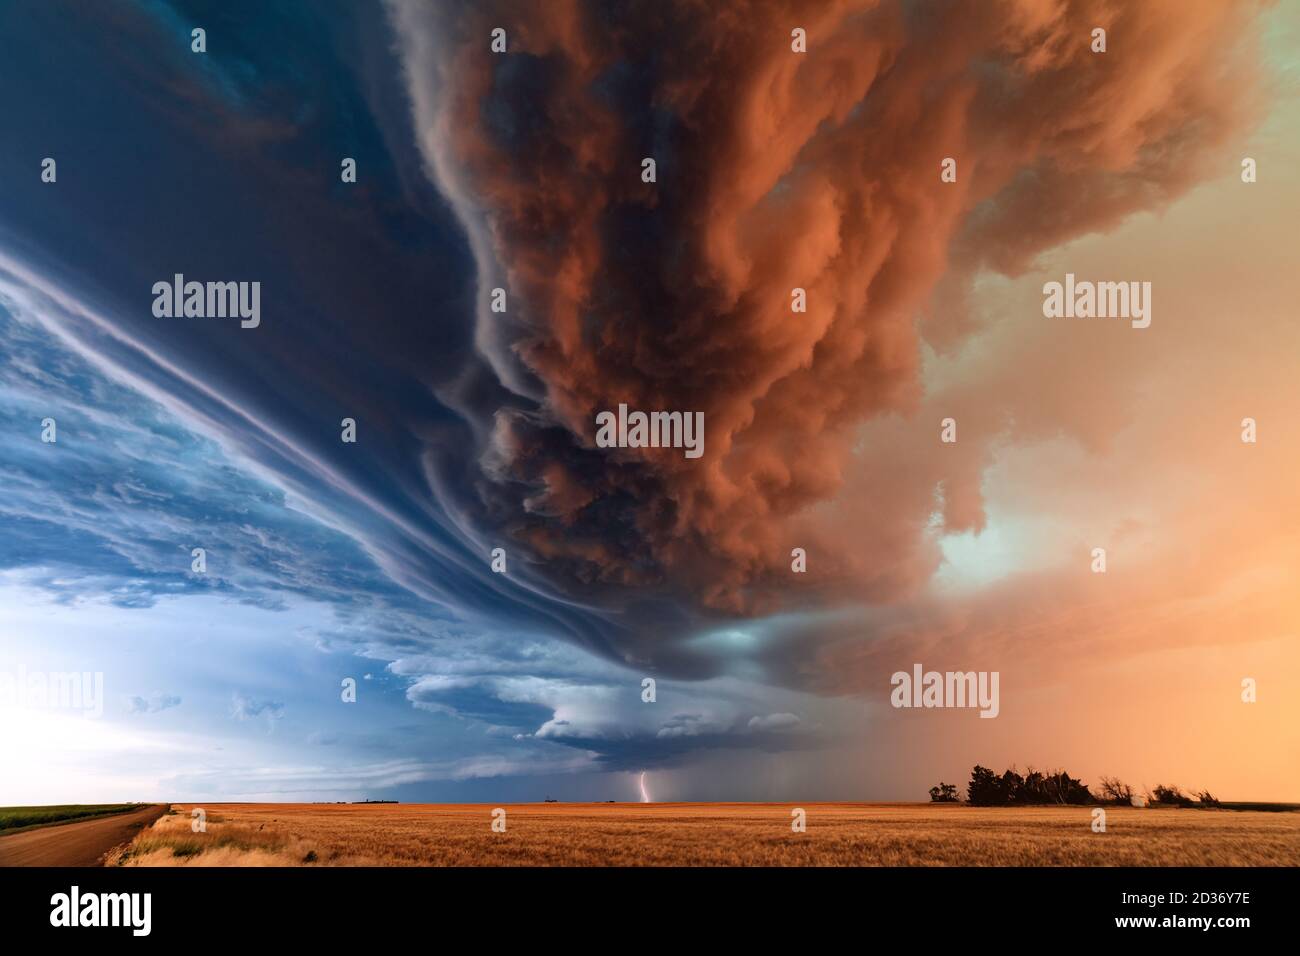 Dramatische Wolken und supercell-Gewitter werden bei Sonnenuntergang von einem linearen Sturm während eines Unwetterausbruchs in der Nähe von St. Francis, Kansas, überschwemmt Stockfoto